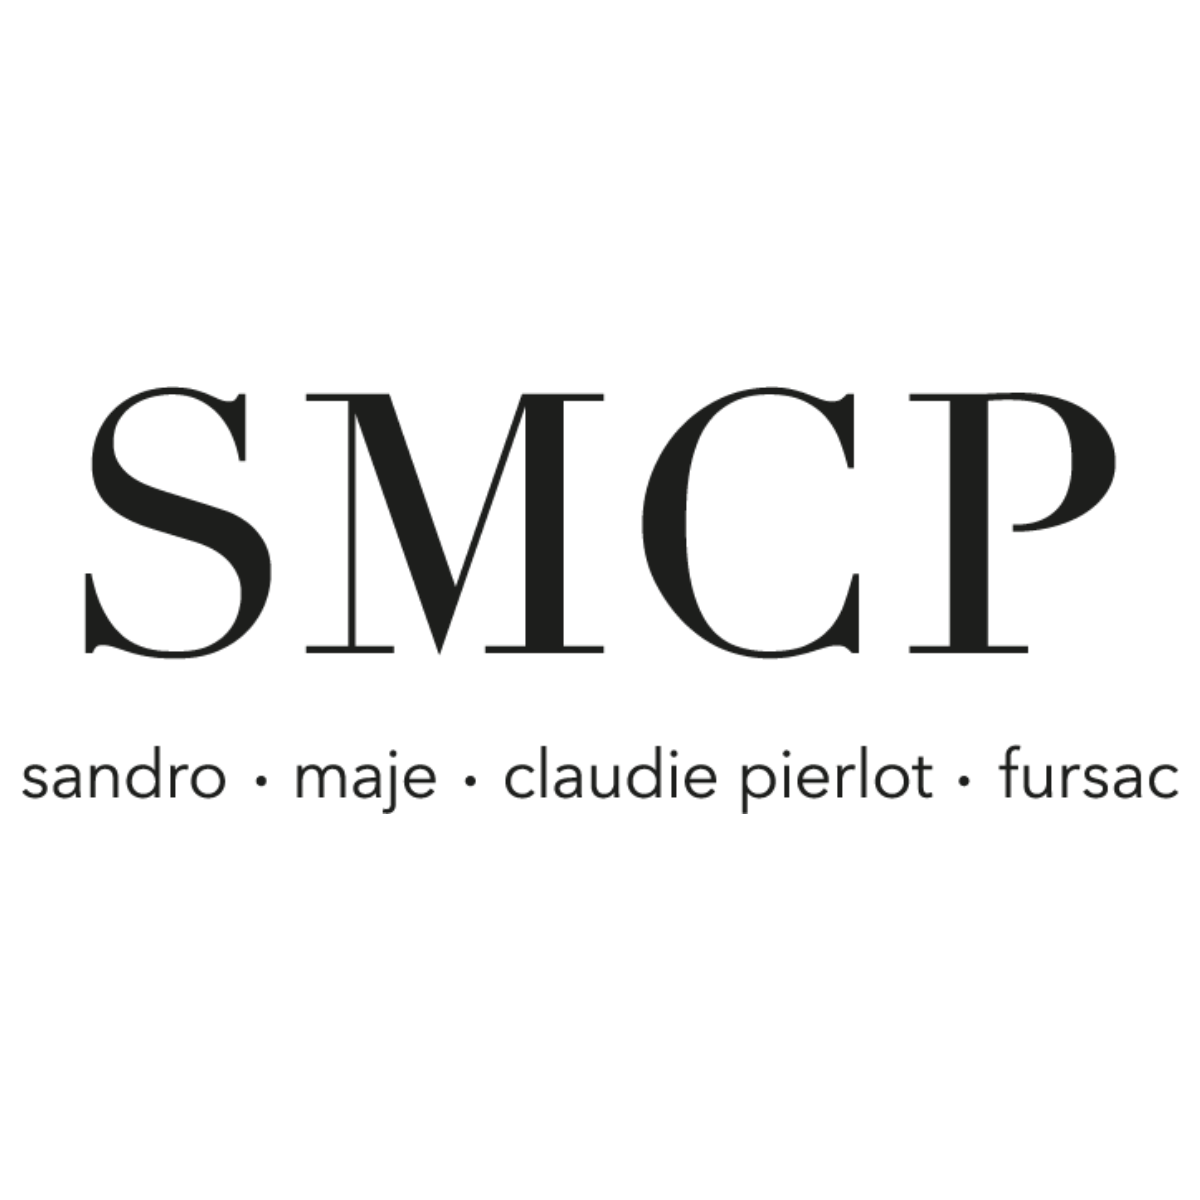 Le logo de SMCP est affiché ici pour mettre en avant son partenariat avec mavisitemedicale.fr, marque d'AKTISEA, dans la gestion des visites médicales des collaborateurs. Chez AKTISEA, entreprise adaptée, nous sommes engagés pour plus d'inclusion.